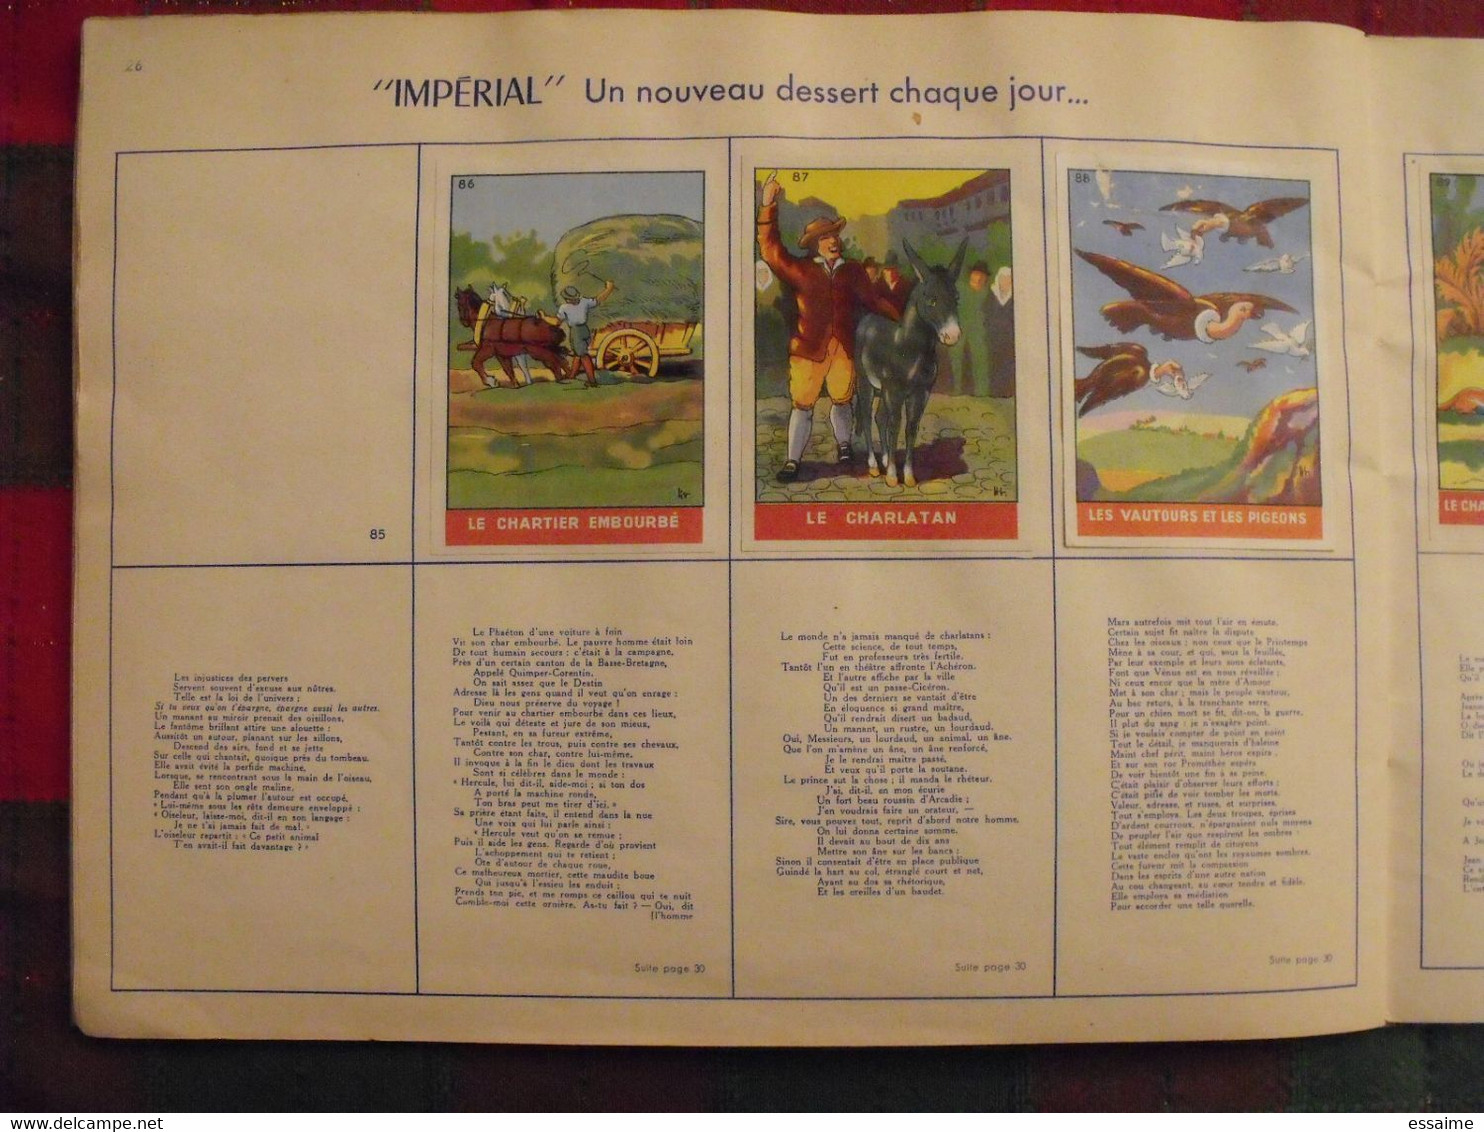 album d'images Fables de La Fontaine. flan entremets Impérial. contient 74/96 images. vers 1960. lot 3